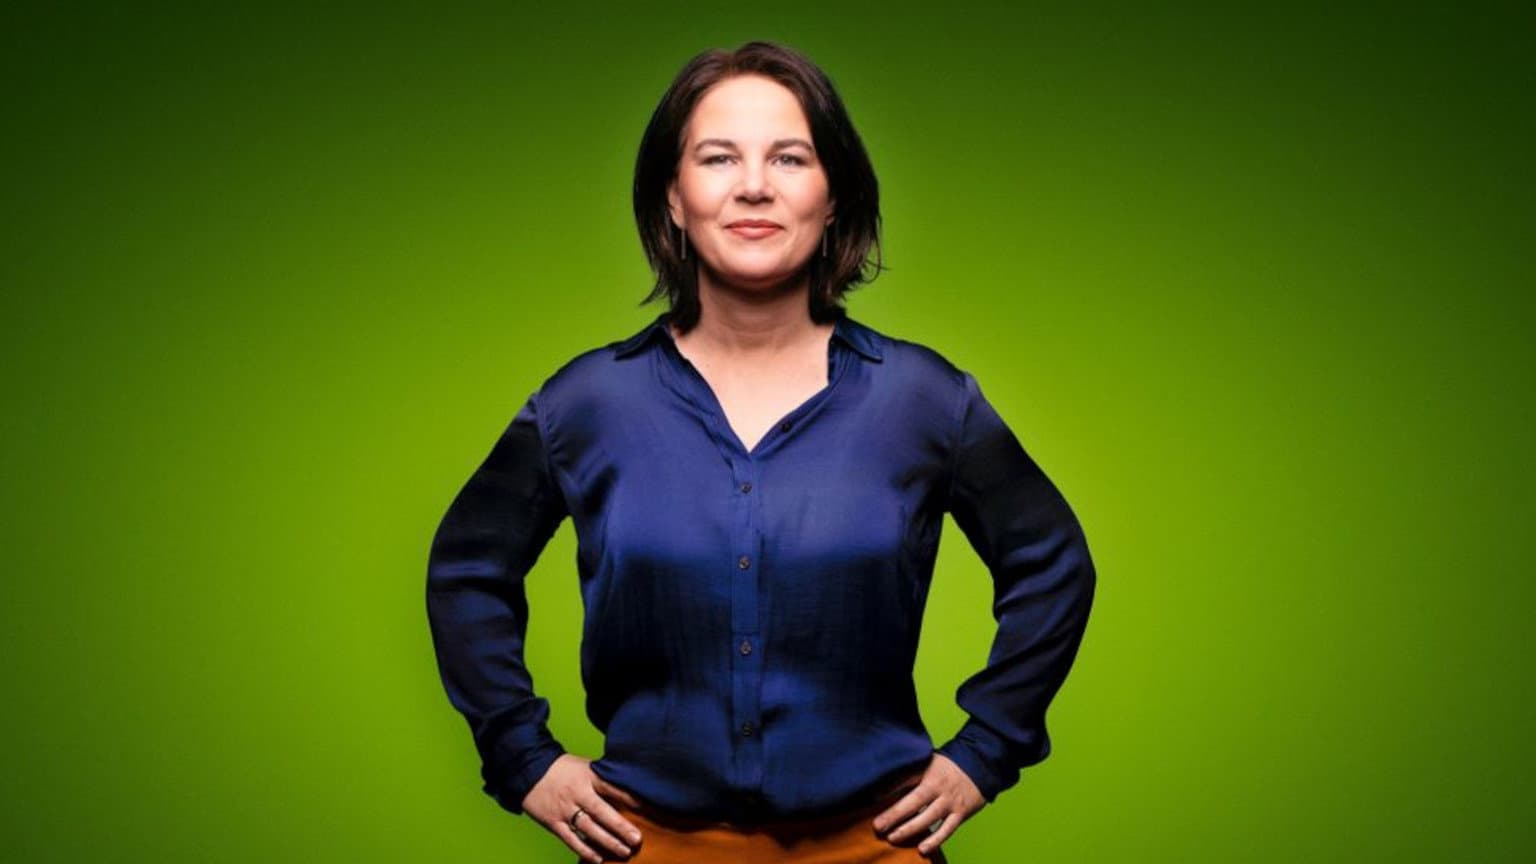 Skandal bei den Grünen: Hat Kanzlerkandidatin Baerbock ihre Hochschulabschlüsse gekauft?